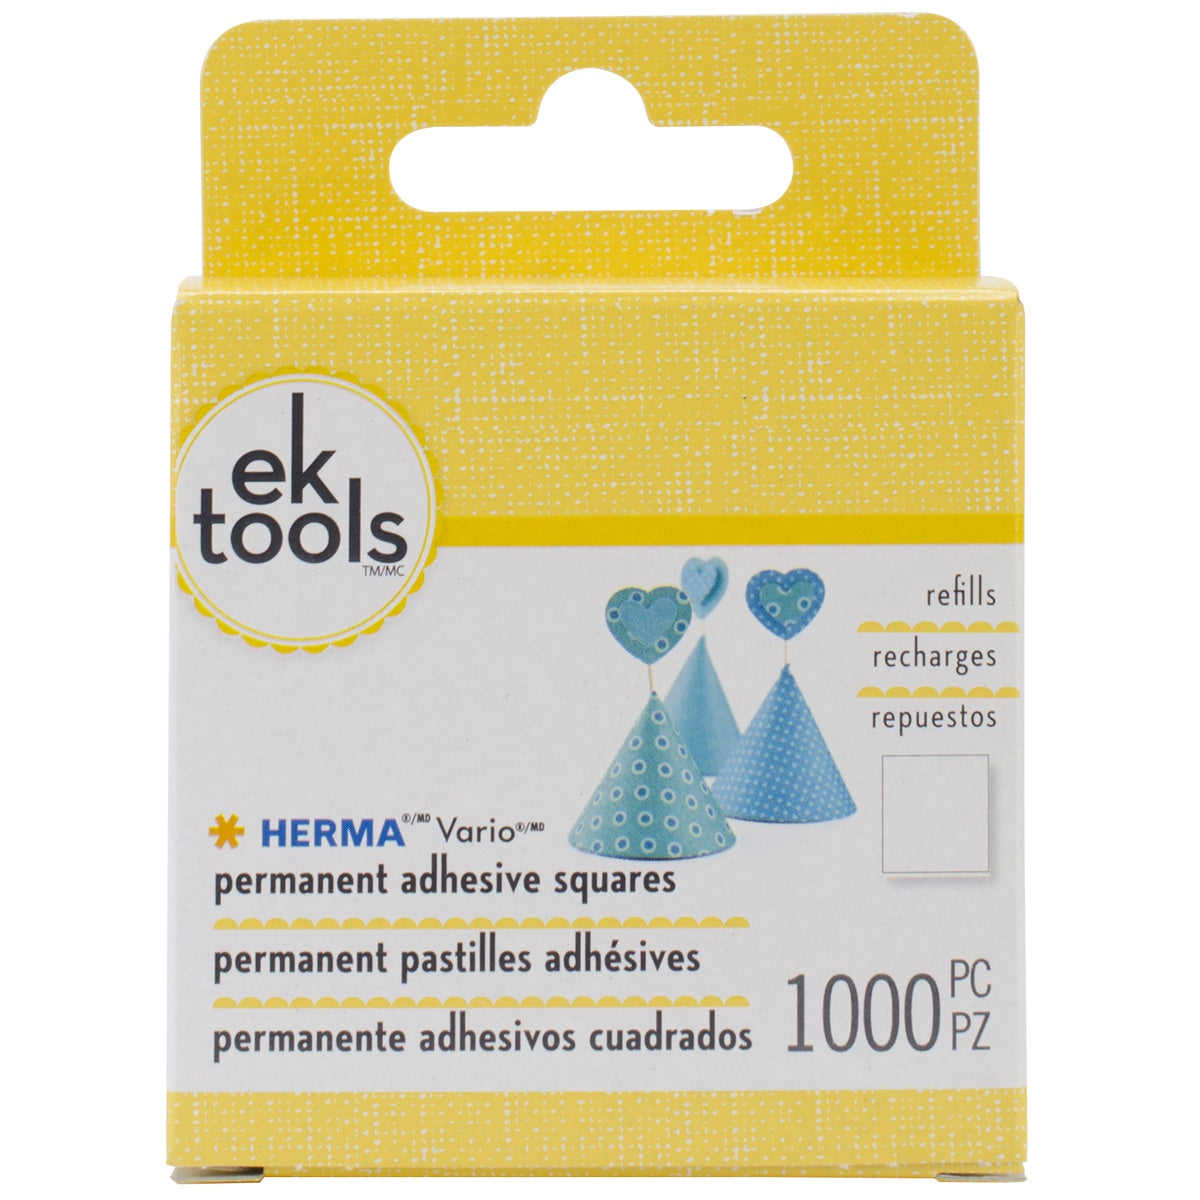 Multipack of 6 - EK Tools HERMA Vario Adhesive Tab Refill Permanent-Permanent-1000pcs, For E5501074